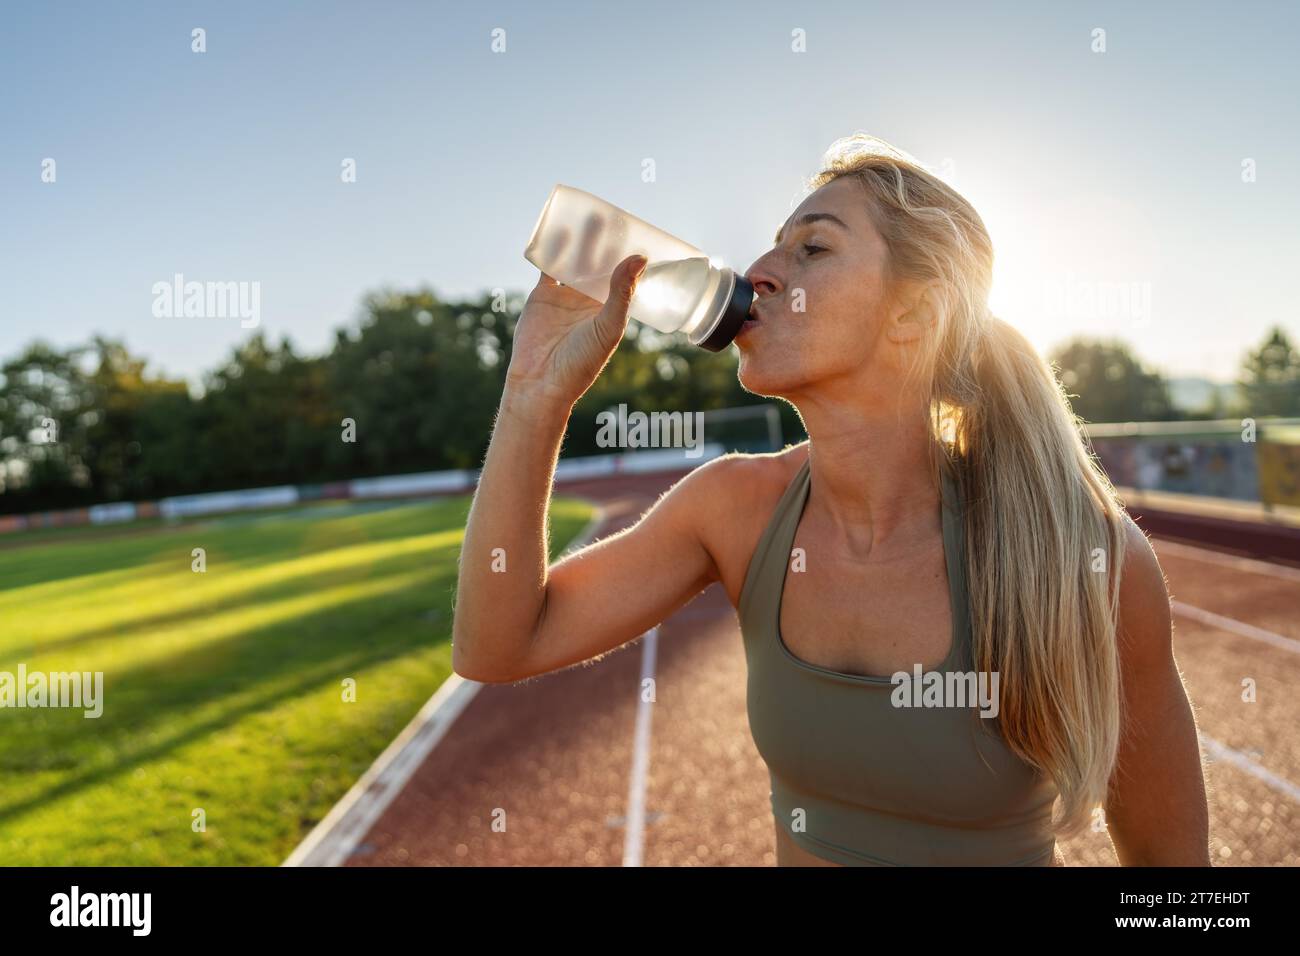 Athletin-Frau trinkt aus einer Wasserflasche auf einem Rennfeld Stockfoto